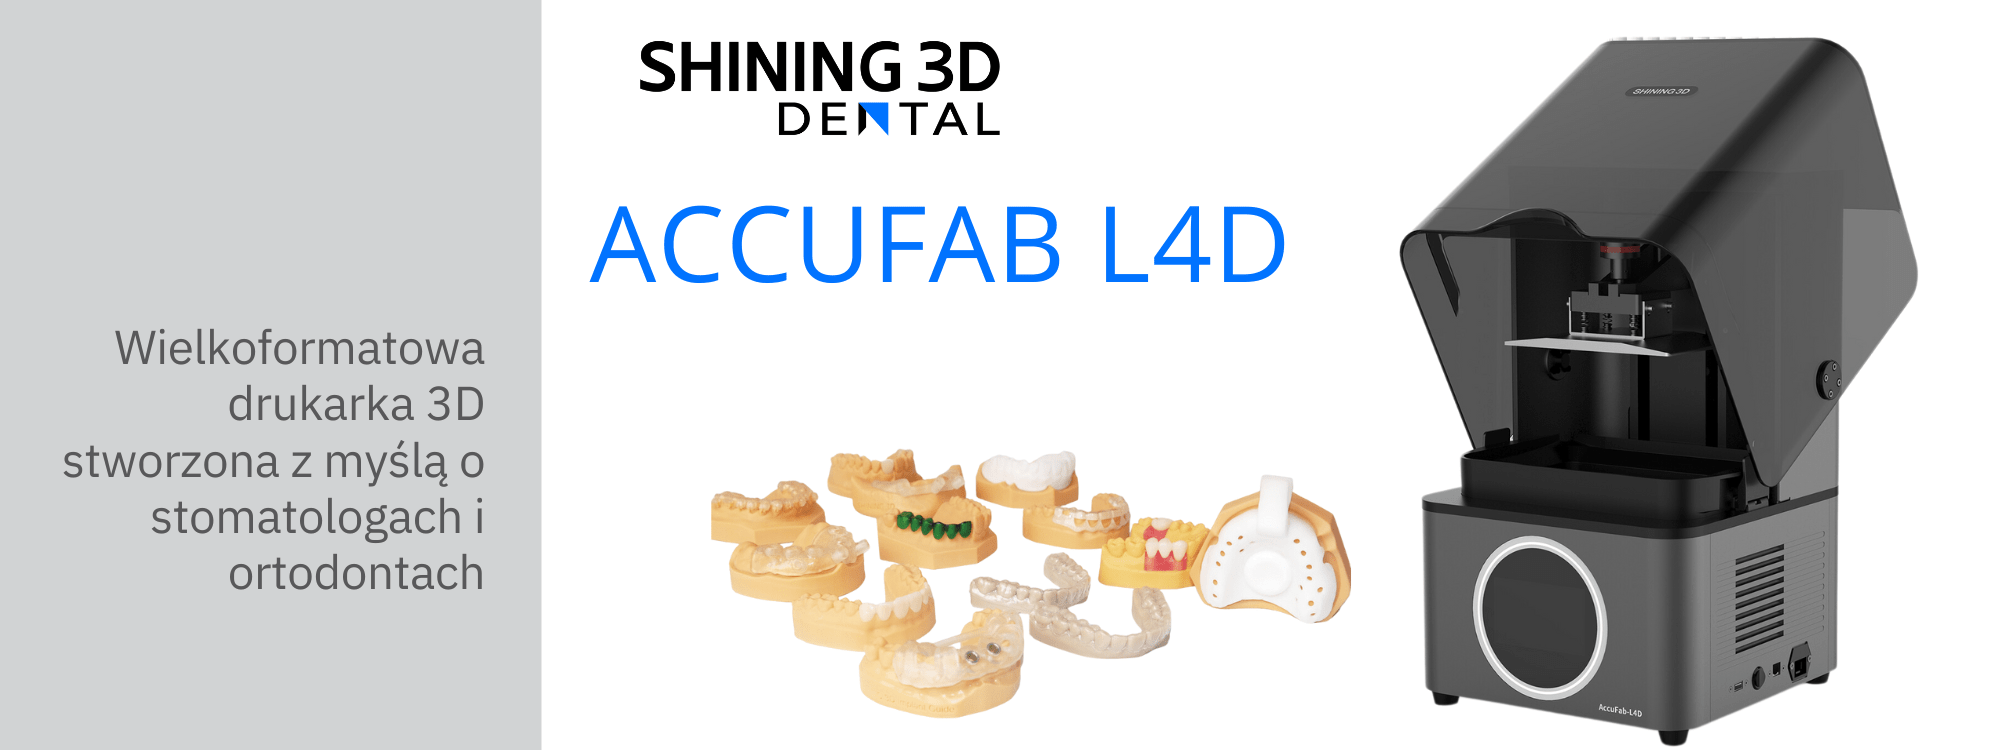 Drukarka 3D Accufab-L4D Shining 3D